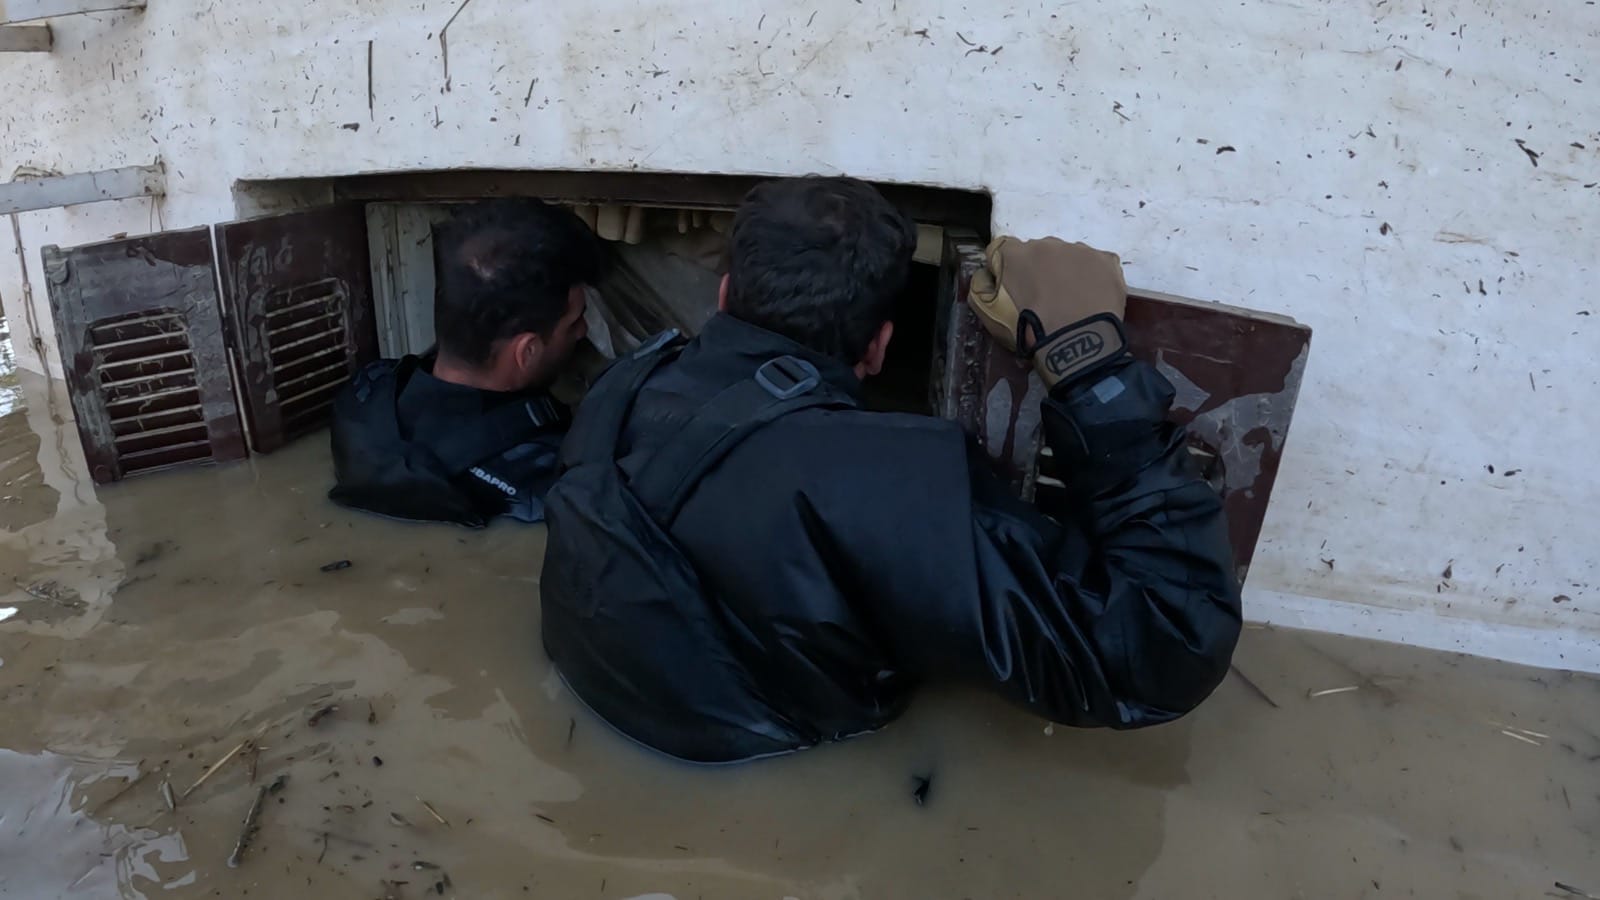 Κακοκαιρία Daniel: Συγκλονιστικές εικόνες από τις επιχειρήσεις της Μονάδας Υποβρυχίων Αποστολών σε πλημμυρισμένα σπίτια